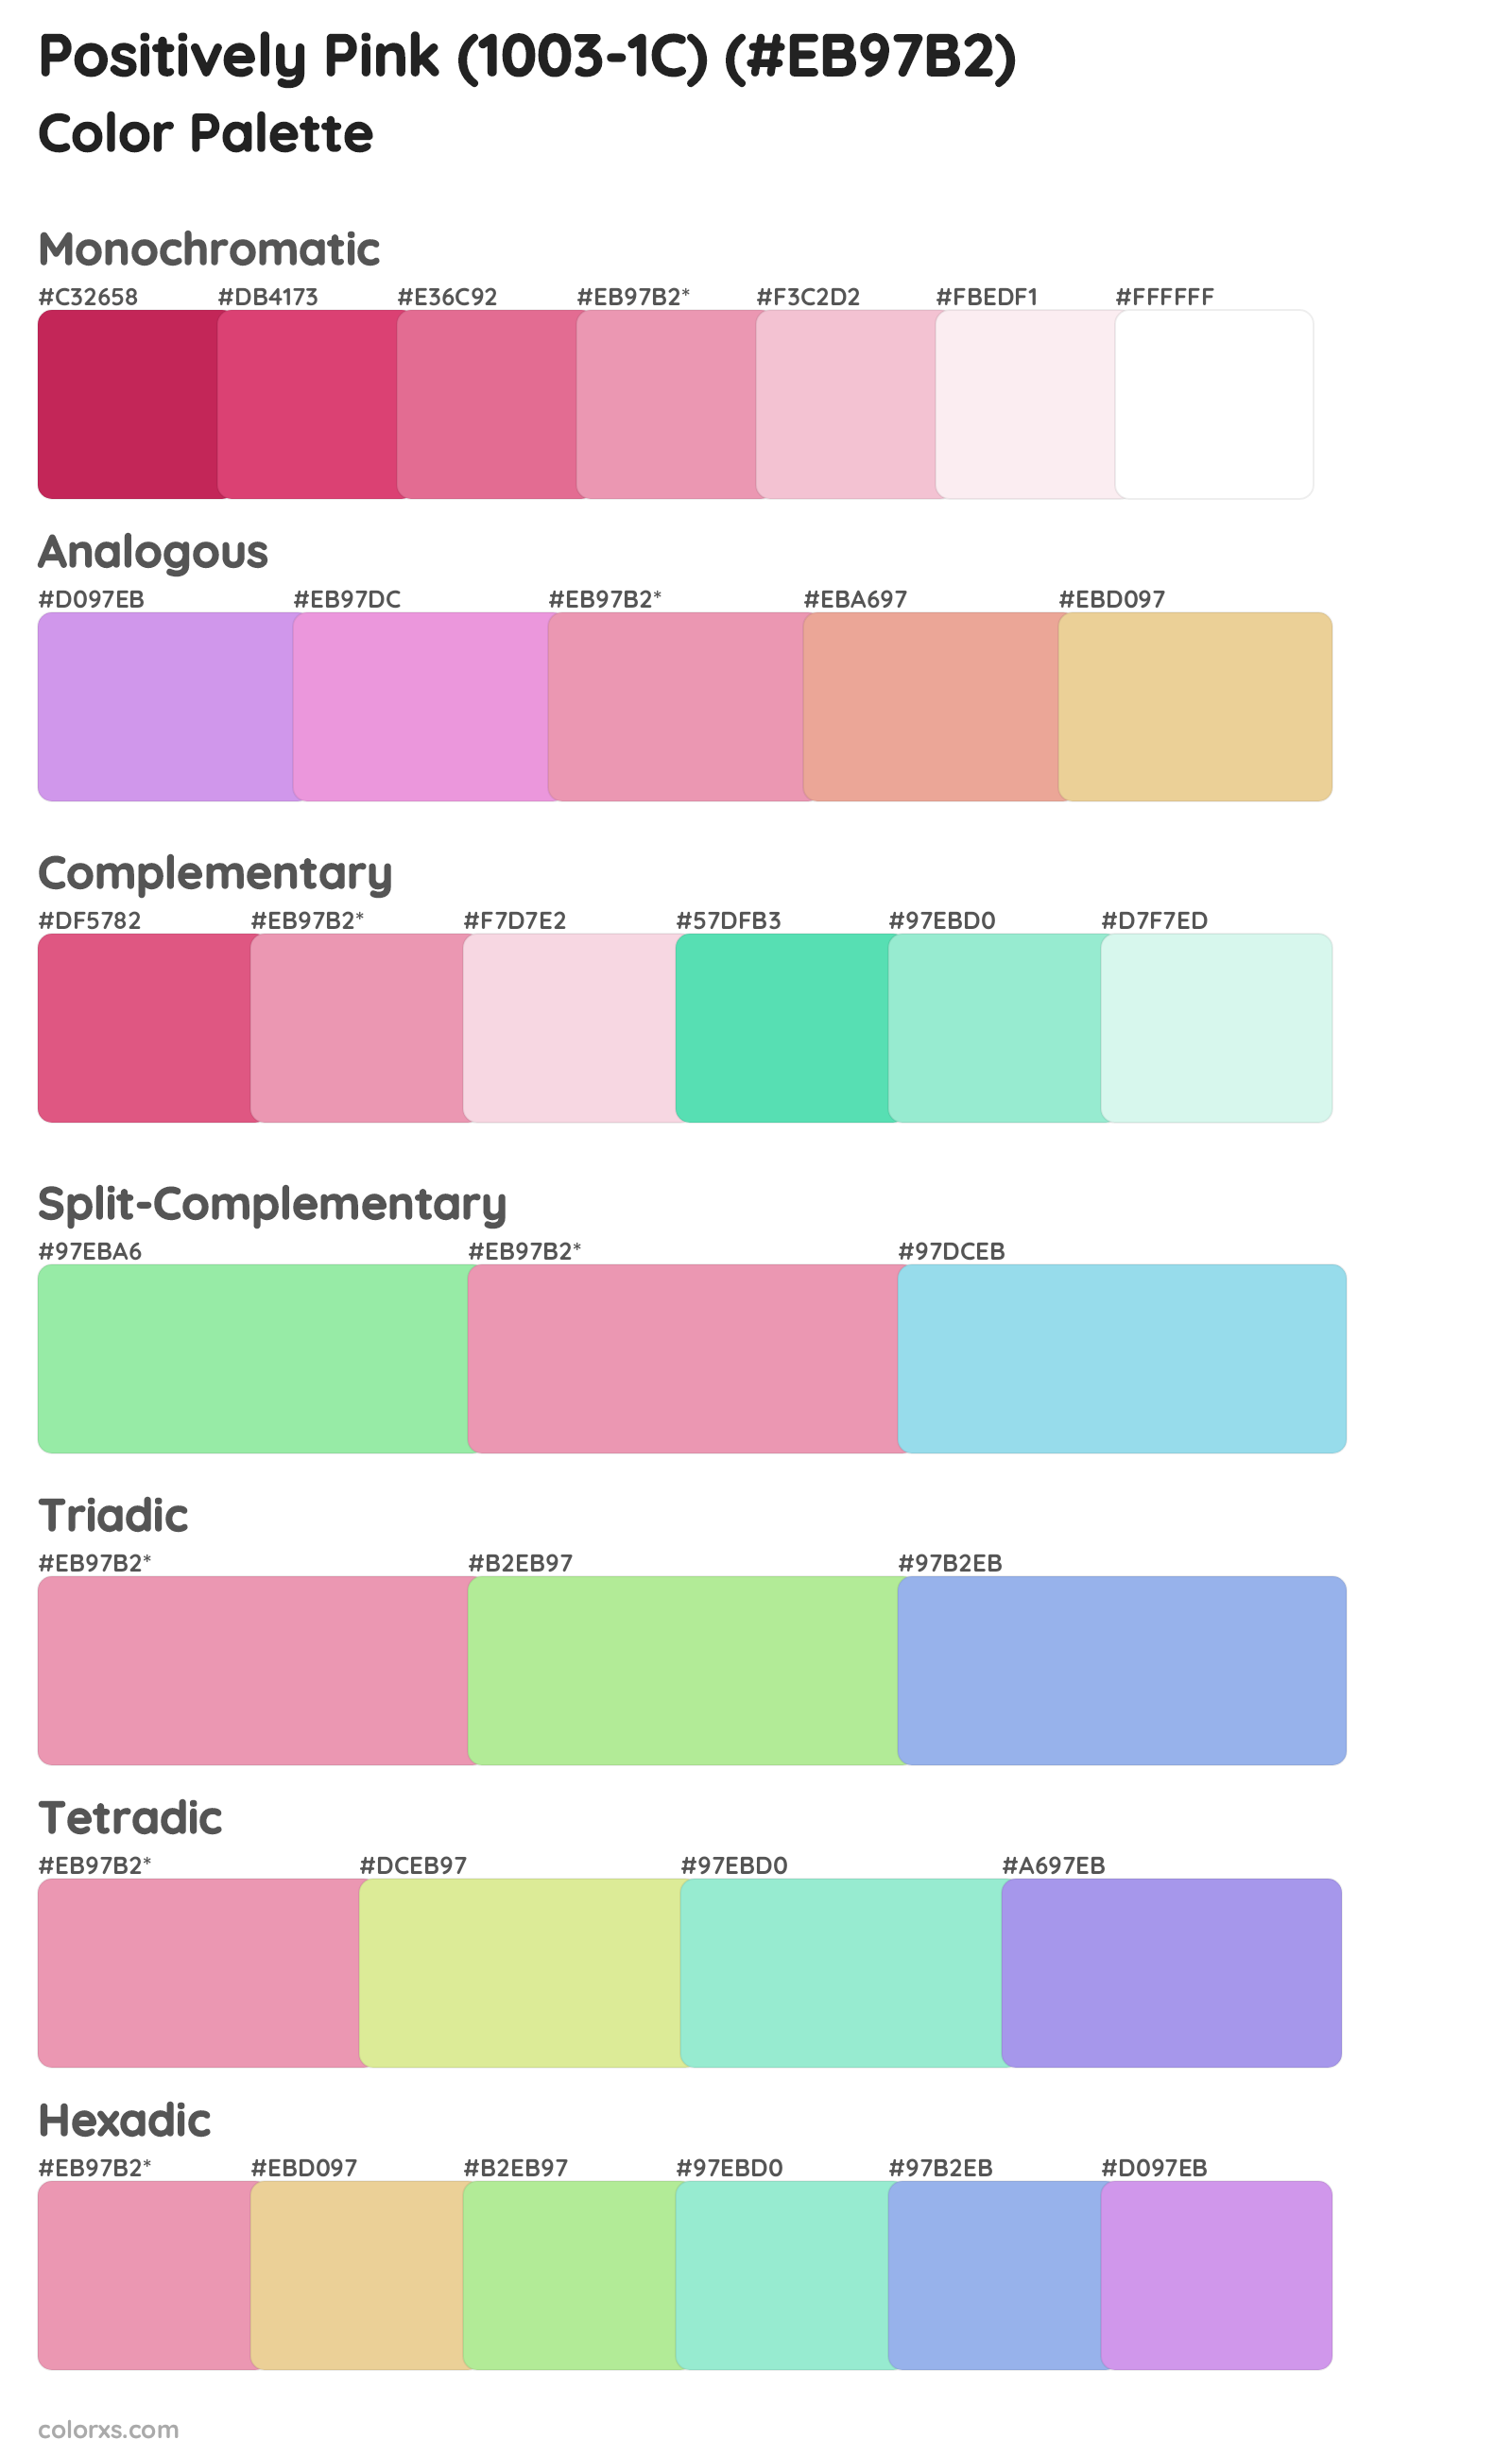 Positively Pink (1003-1C) Color Scheme Palettes